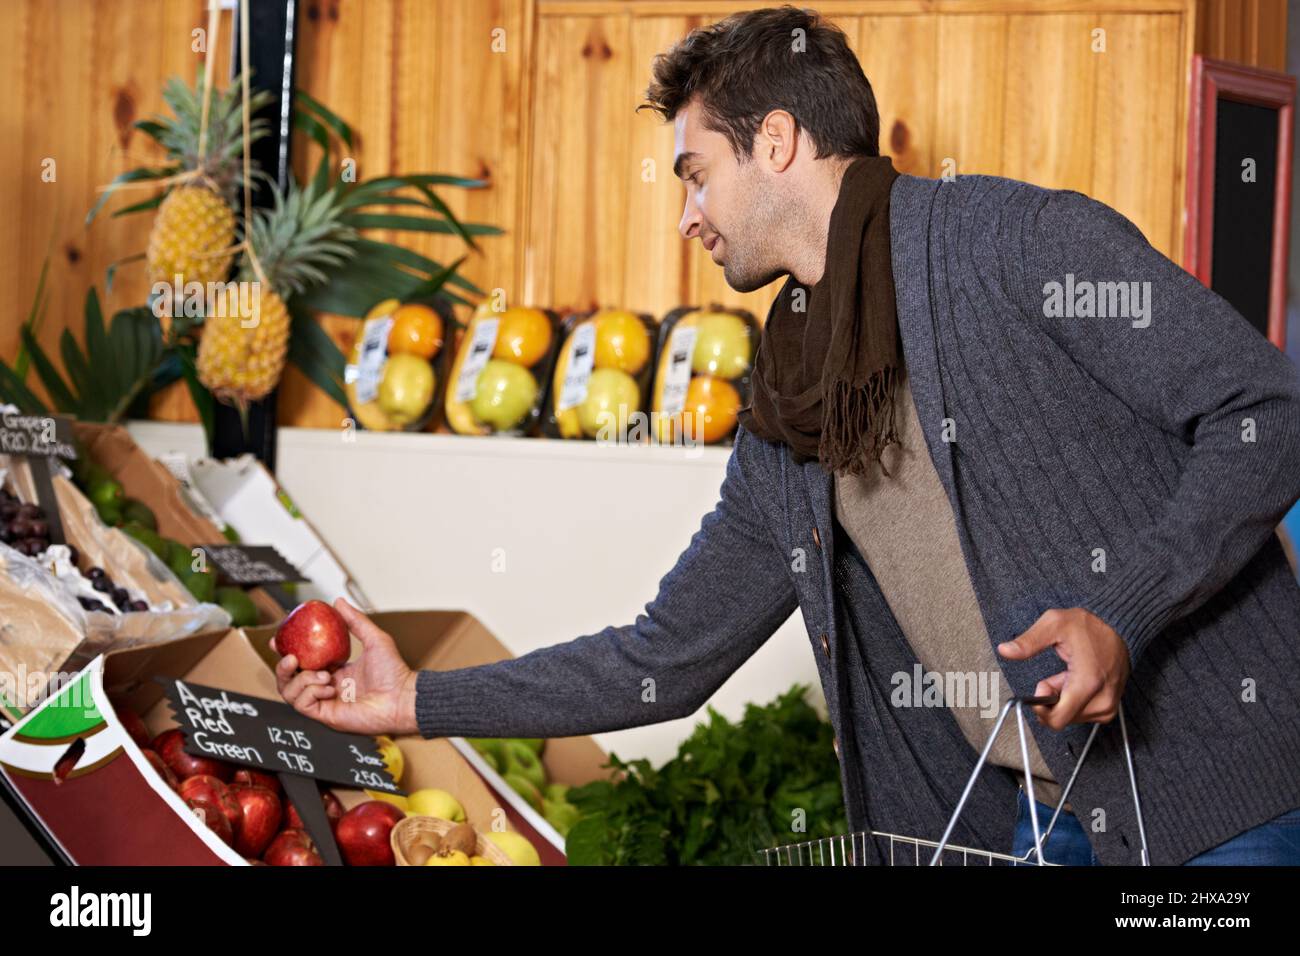 Nur das frischeste für ihn. Aufnahme eines jungen Mannes in einem Supermarkt, der frische Produkte einkauft. Stockfoto